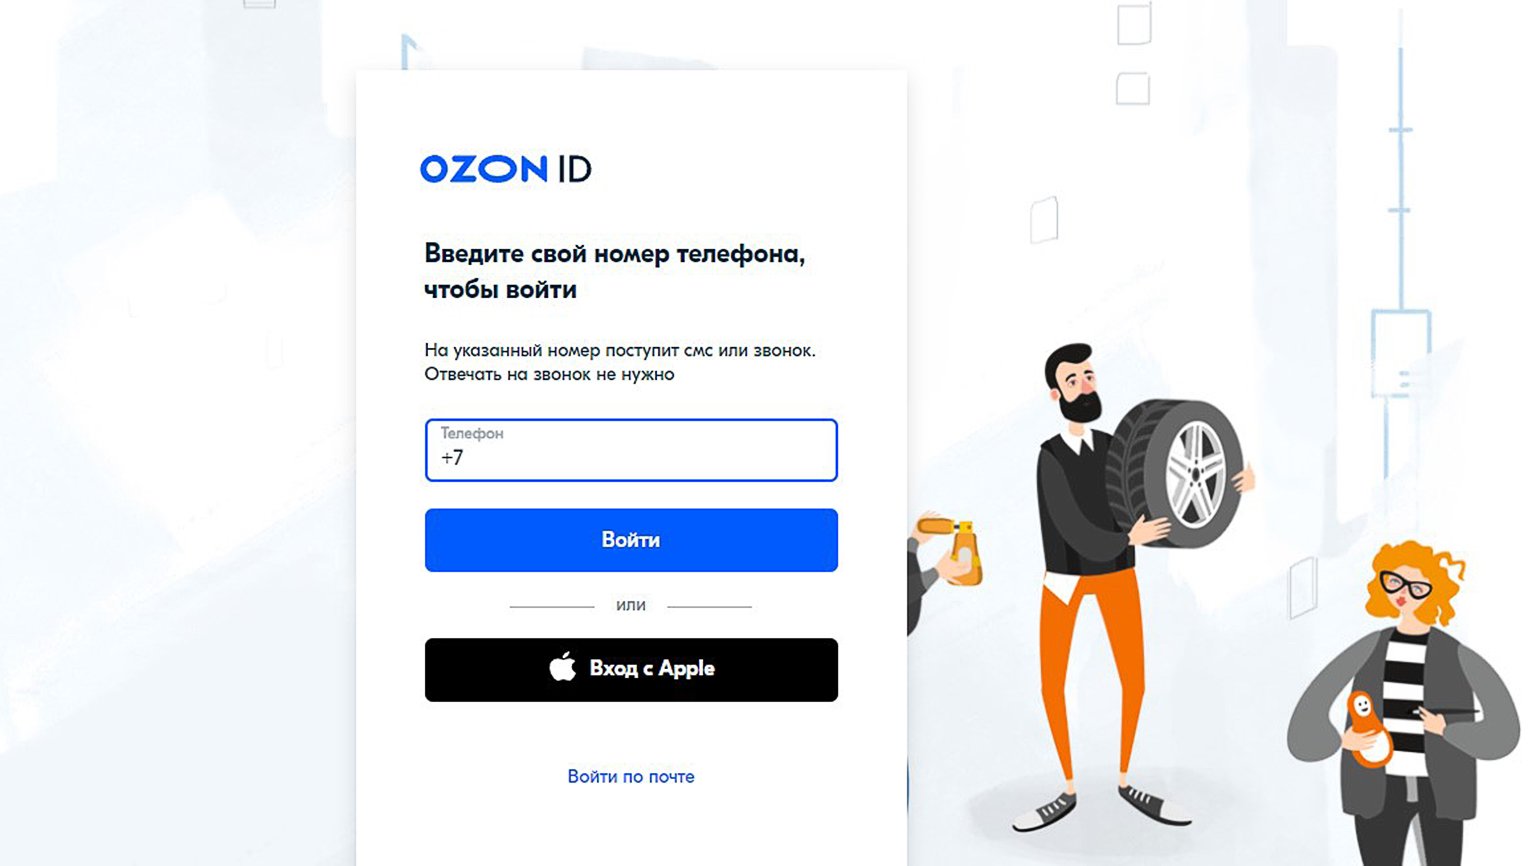 Озон регистрация личный кабинет по номеру телефона. Озон селлер. Карточка товара Озон. OZON seller личный кабинет. OZON seller логотип.